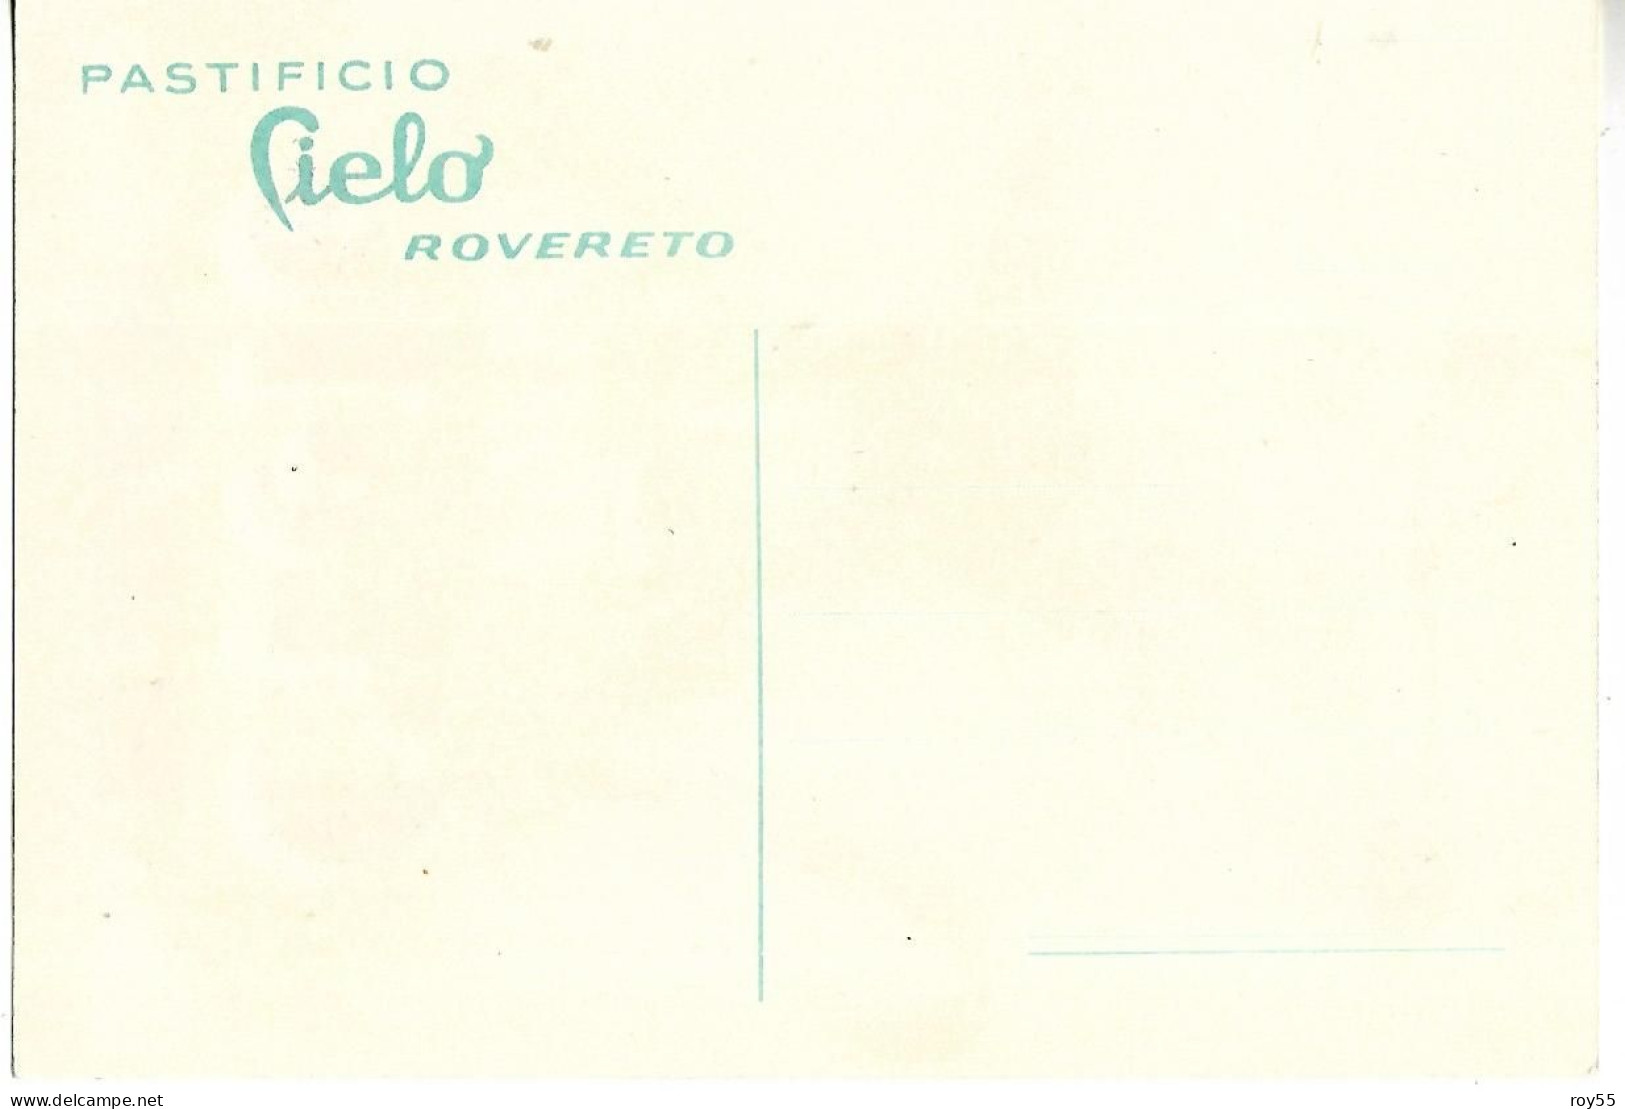 Trentino Alto Adige Trento Rovereto Pastificio Cielo Pubblicita Pasta Cielo Di Cielo Corrado E Figli (v.retro) - Advertising